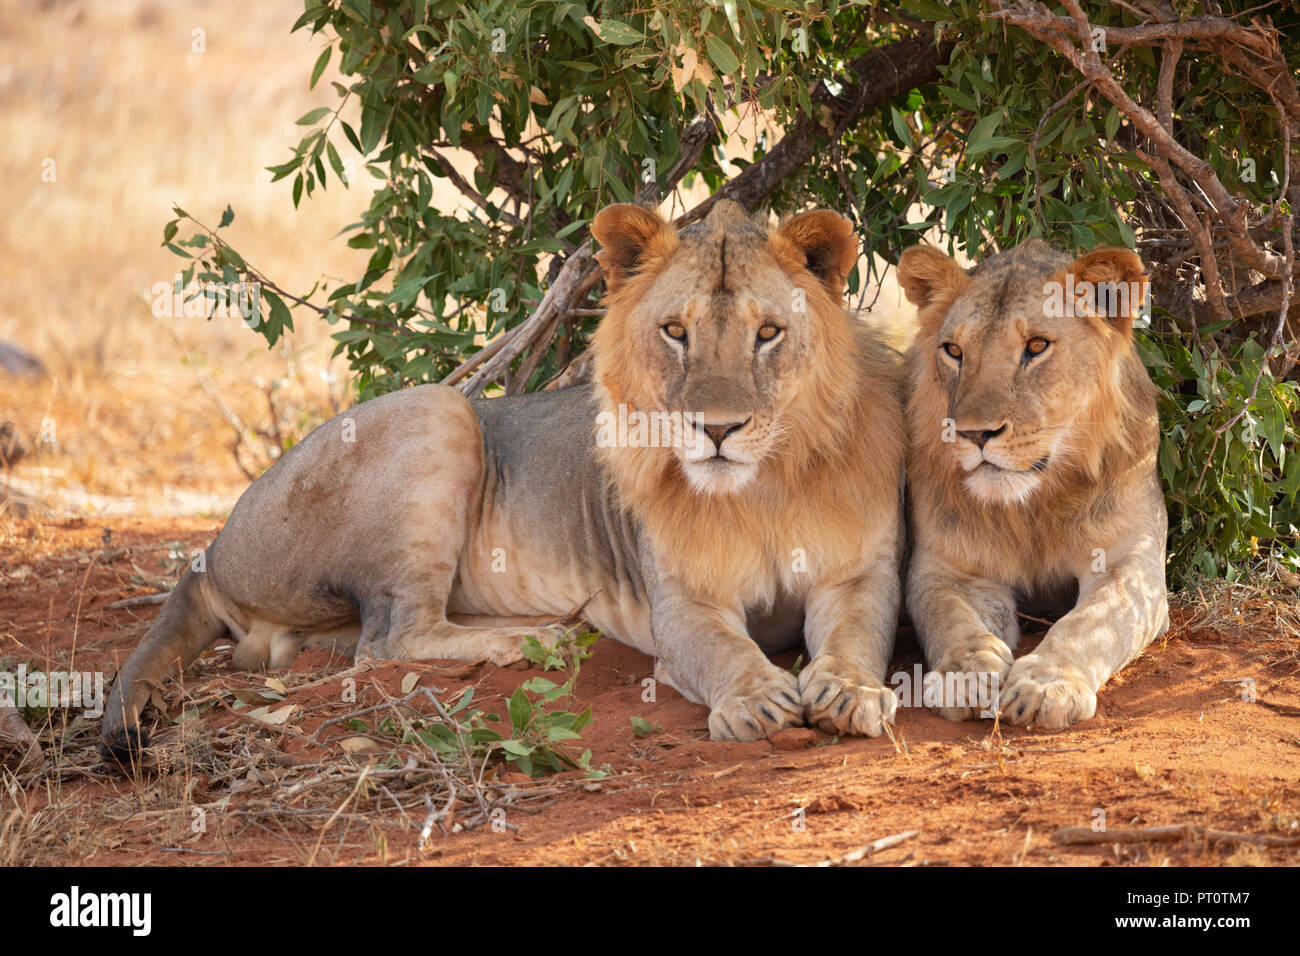 Parco nazionale orientale di tsavo, Kenya, Africa - Tsavo Lions in appoggio sotto l'ombra di una bussola di sera Foto Stock